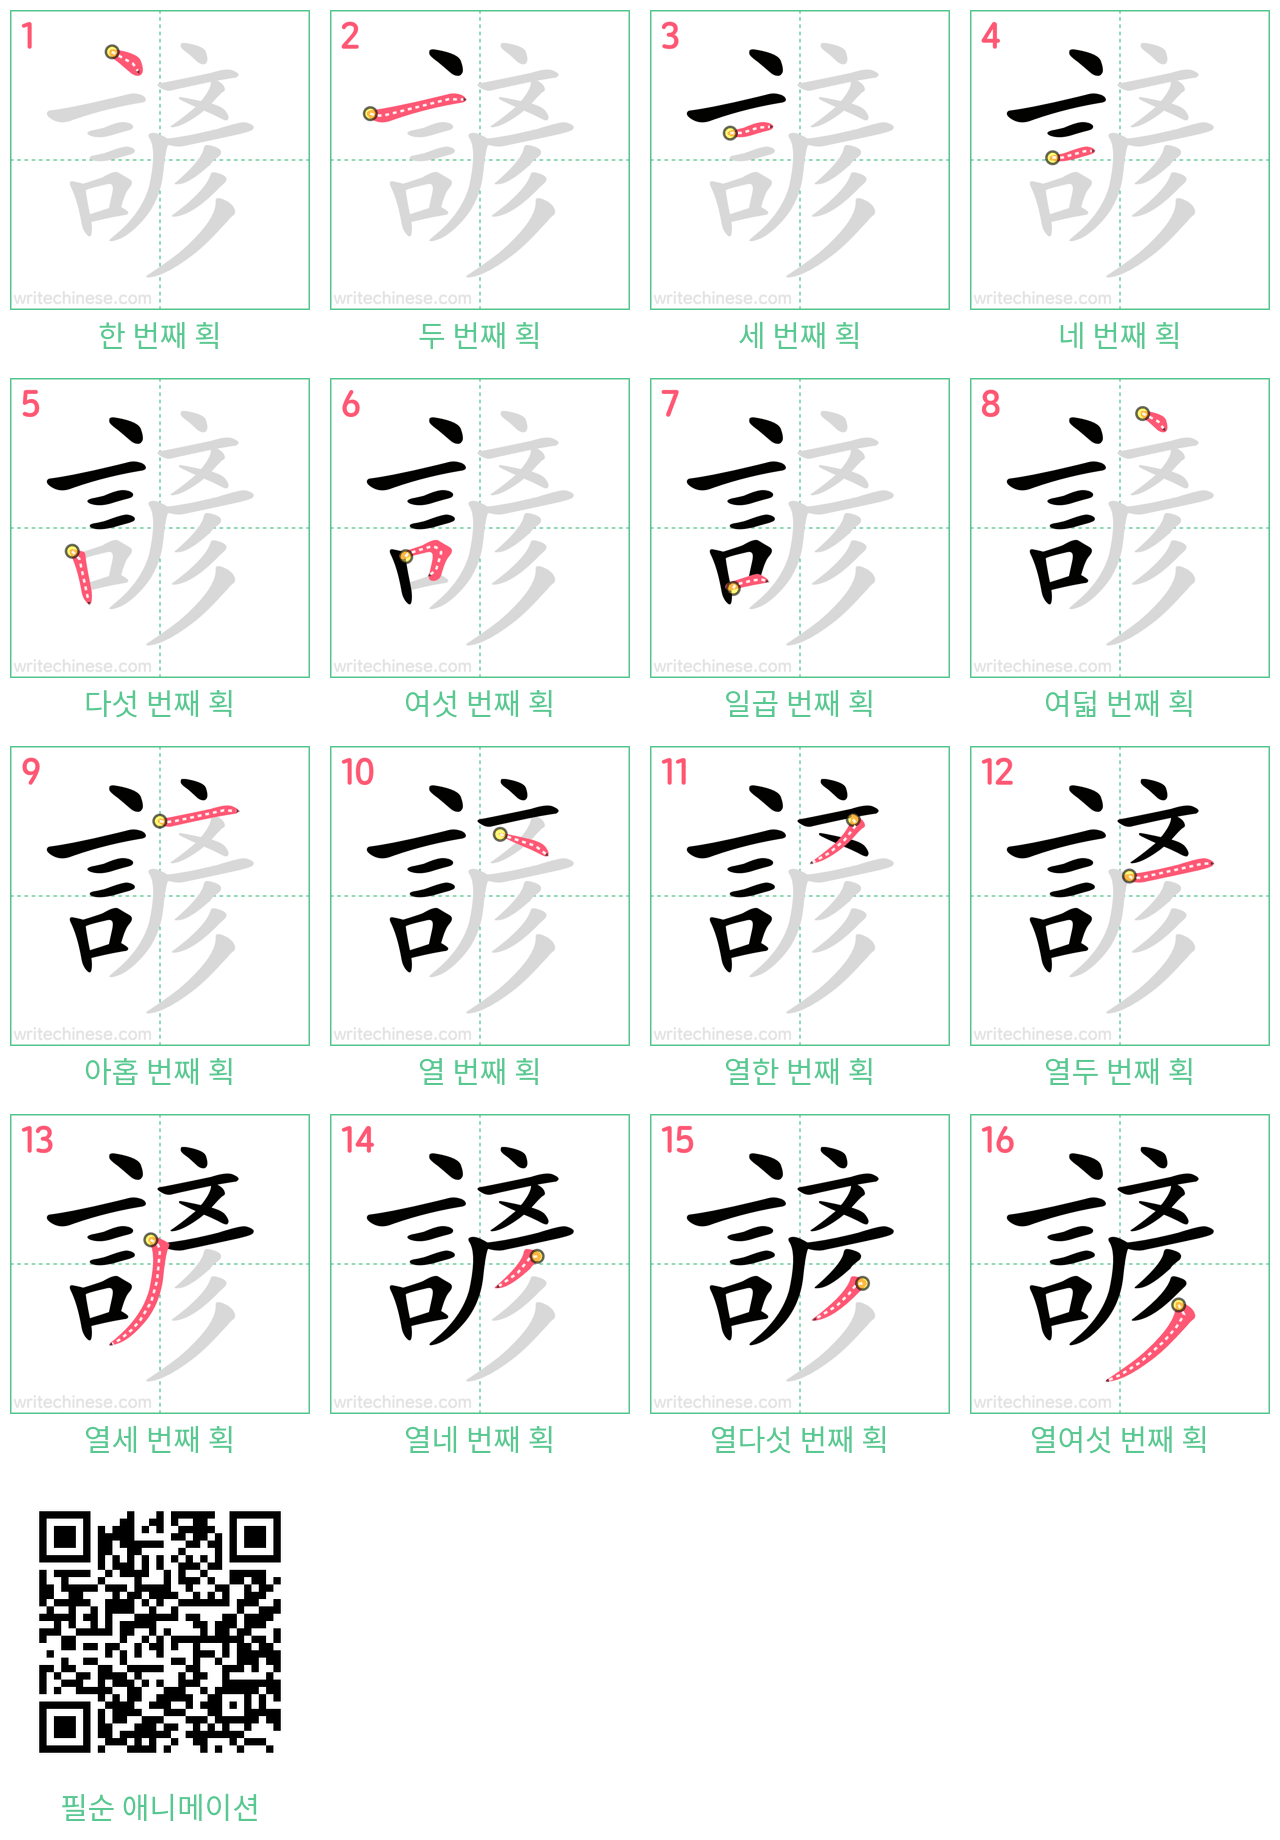 諺 step-by-step stroke order diagrams